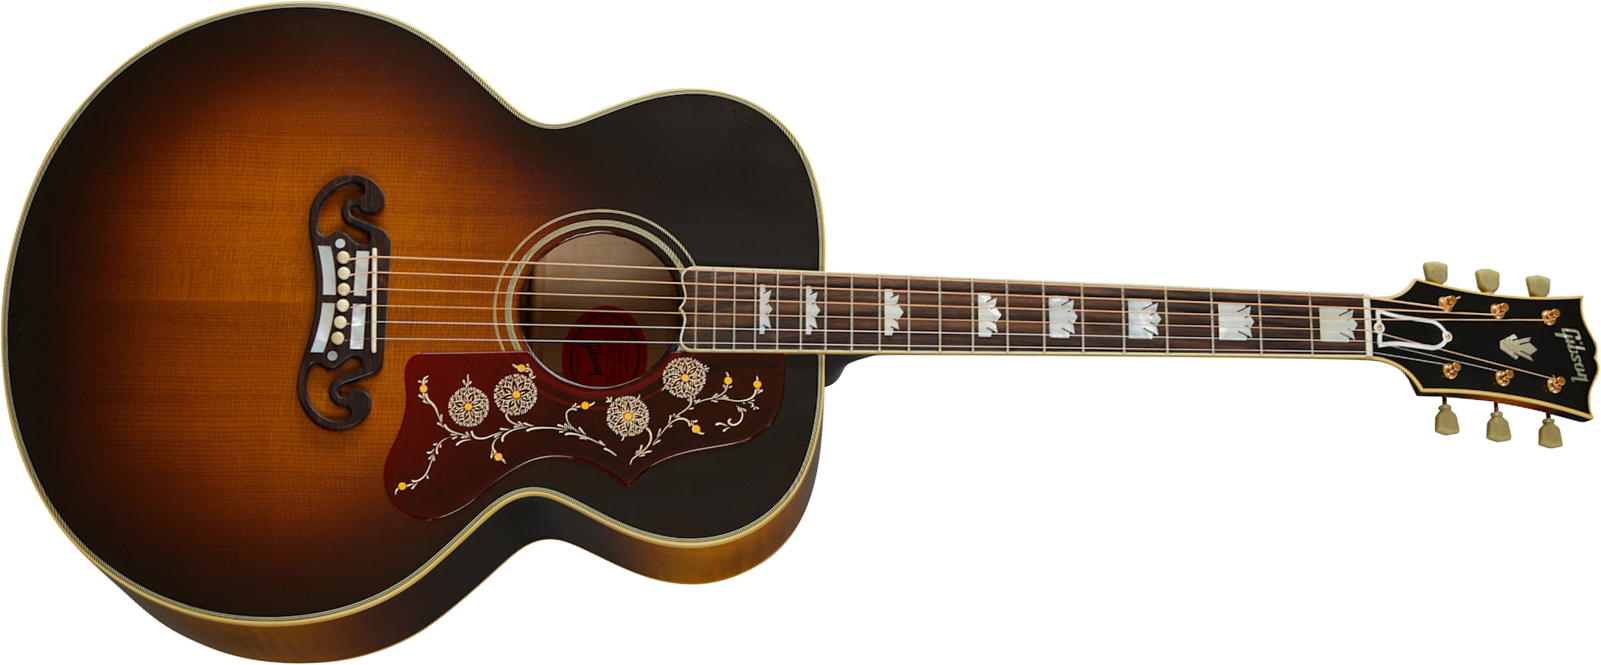 Gibson Custom Shop Sj-200 1957 Super Jumbo Epicea Erable Rw - Vos Vintage Sunburst - Acoustic guitar & electro - Main picture